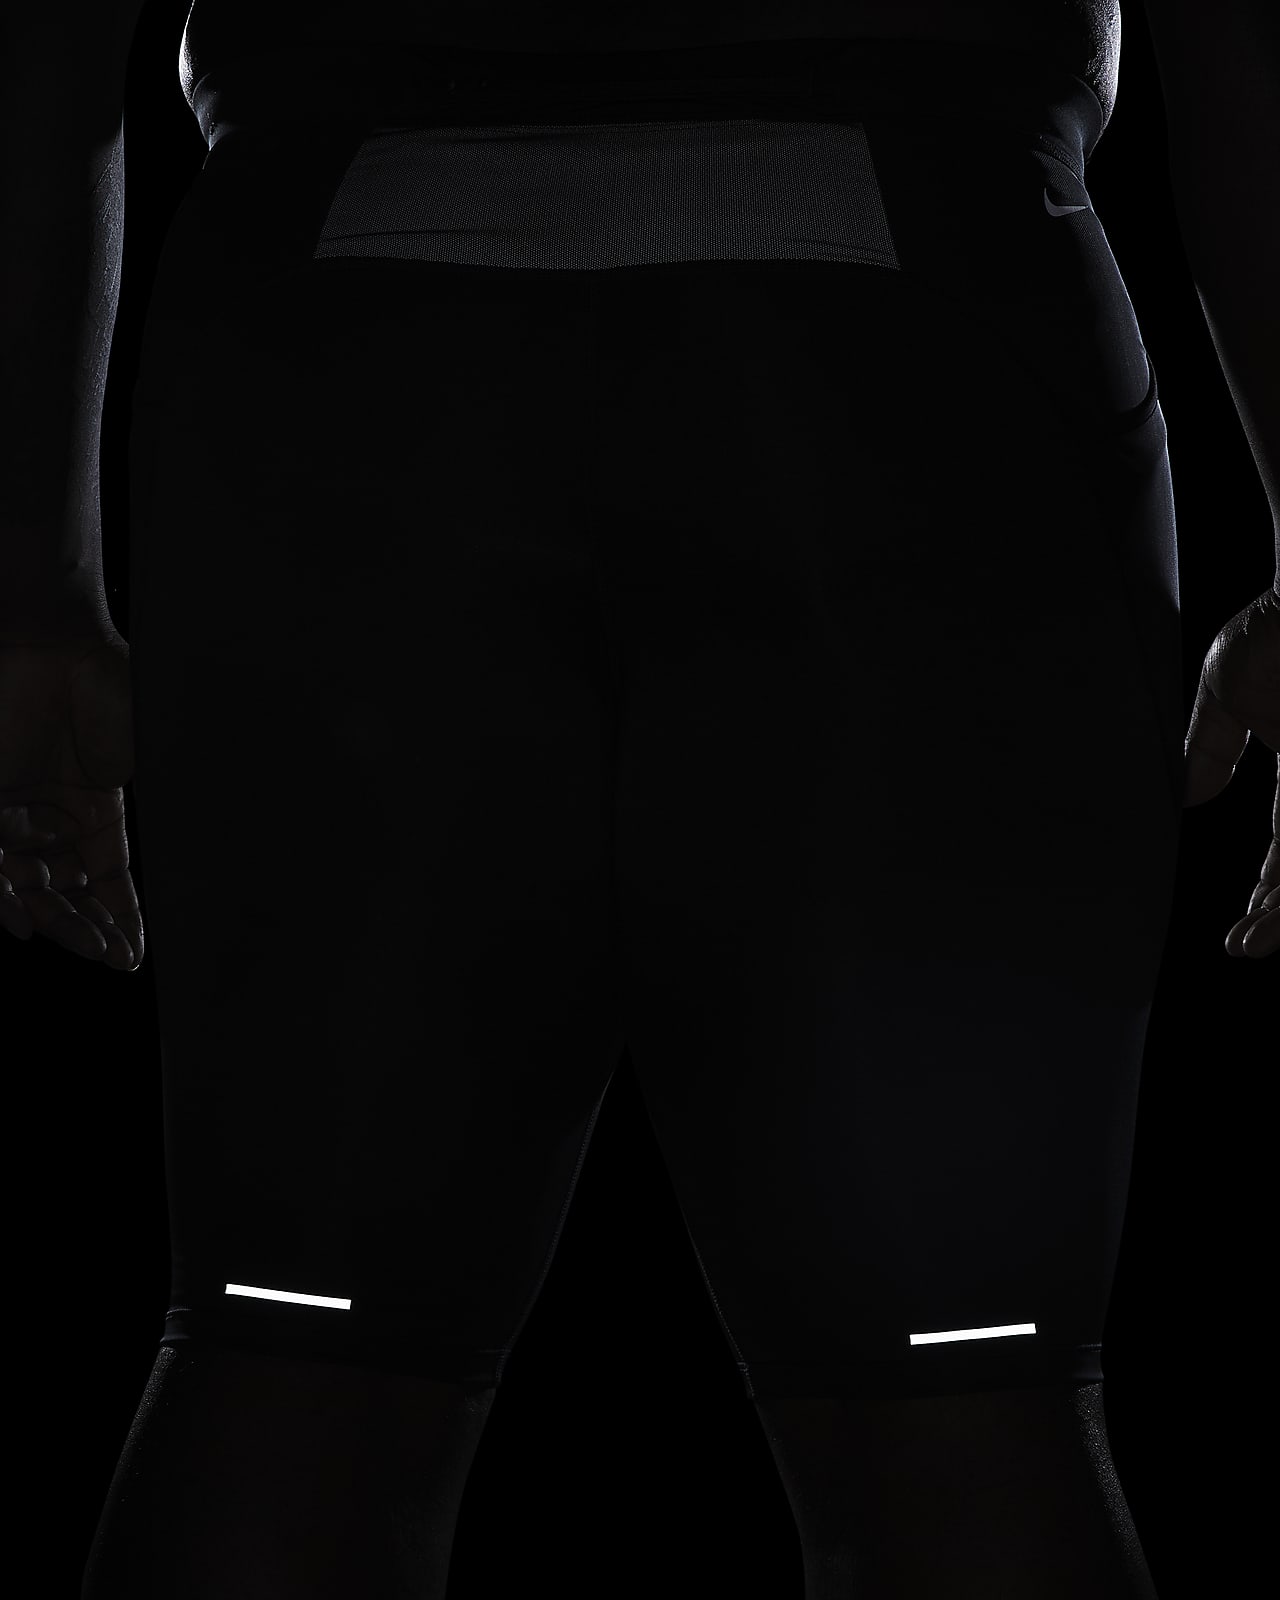 Męskie legginsy do biegania o długości 1/2 Dri-FIT Nike Trail Lava Loops.  Nike PL